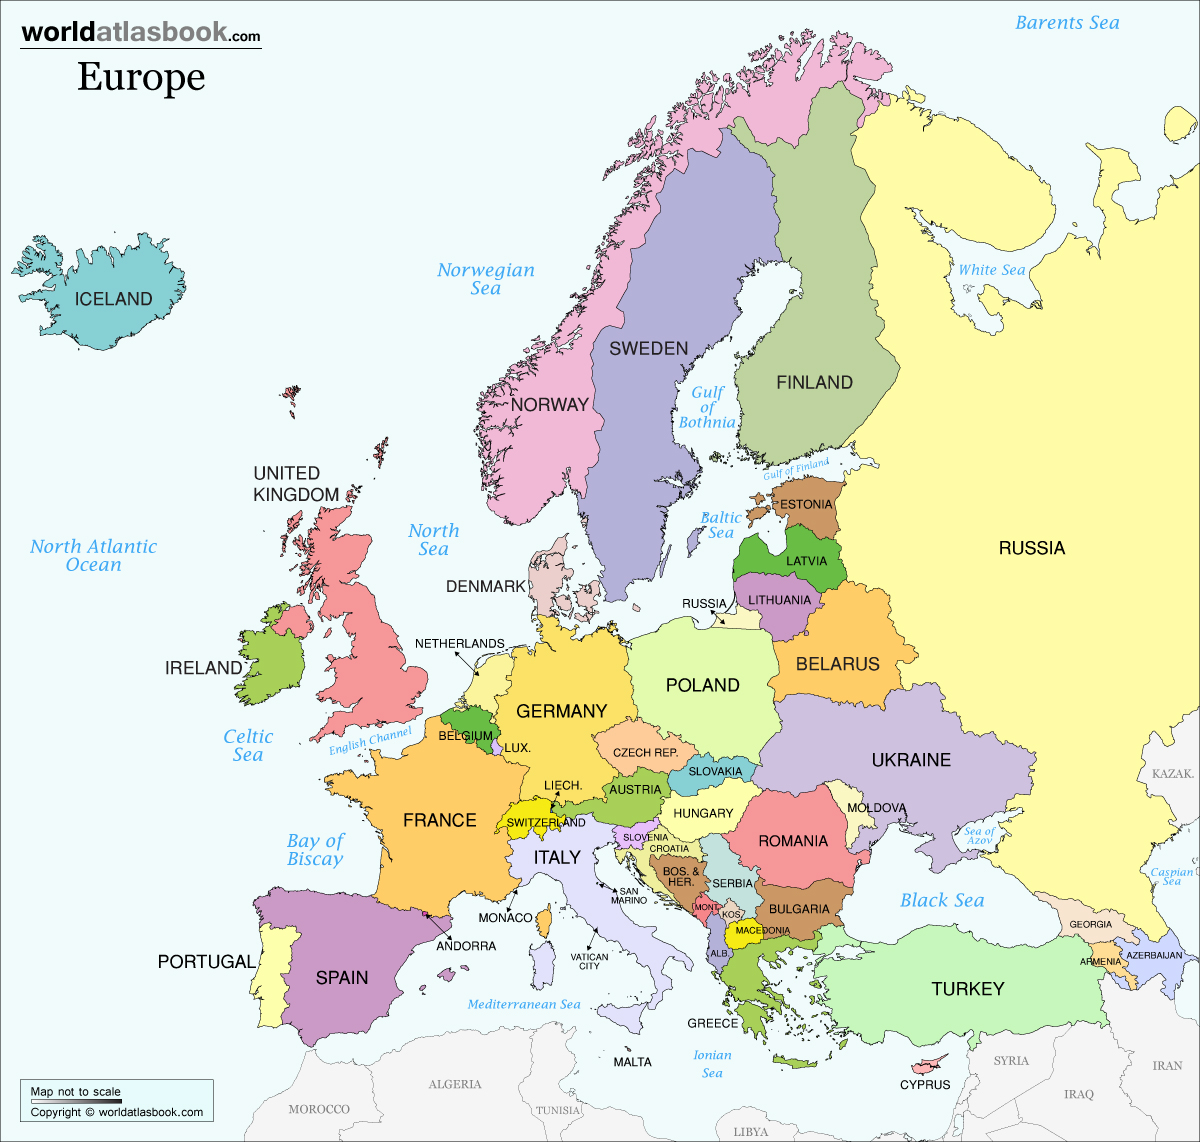 European Countries |